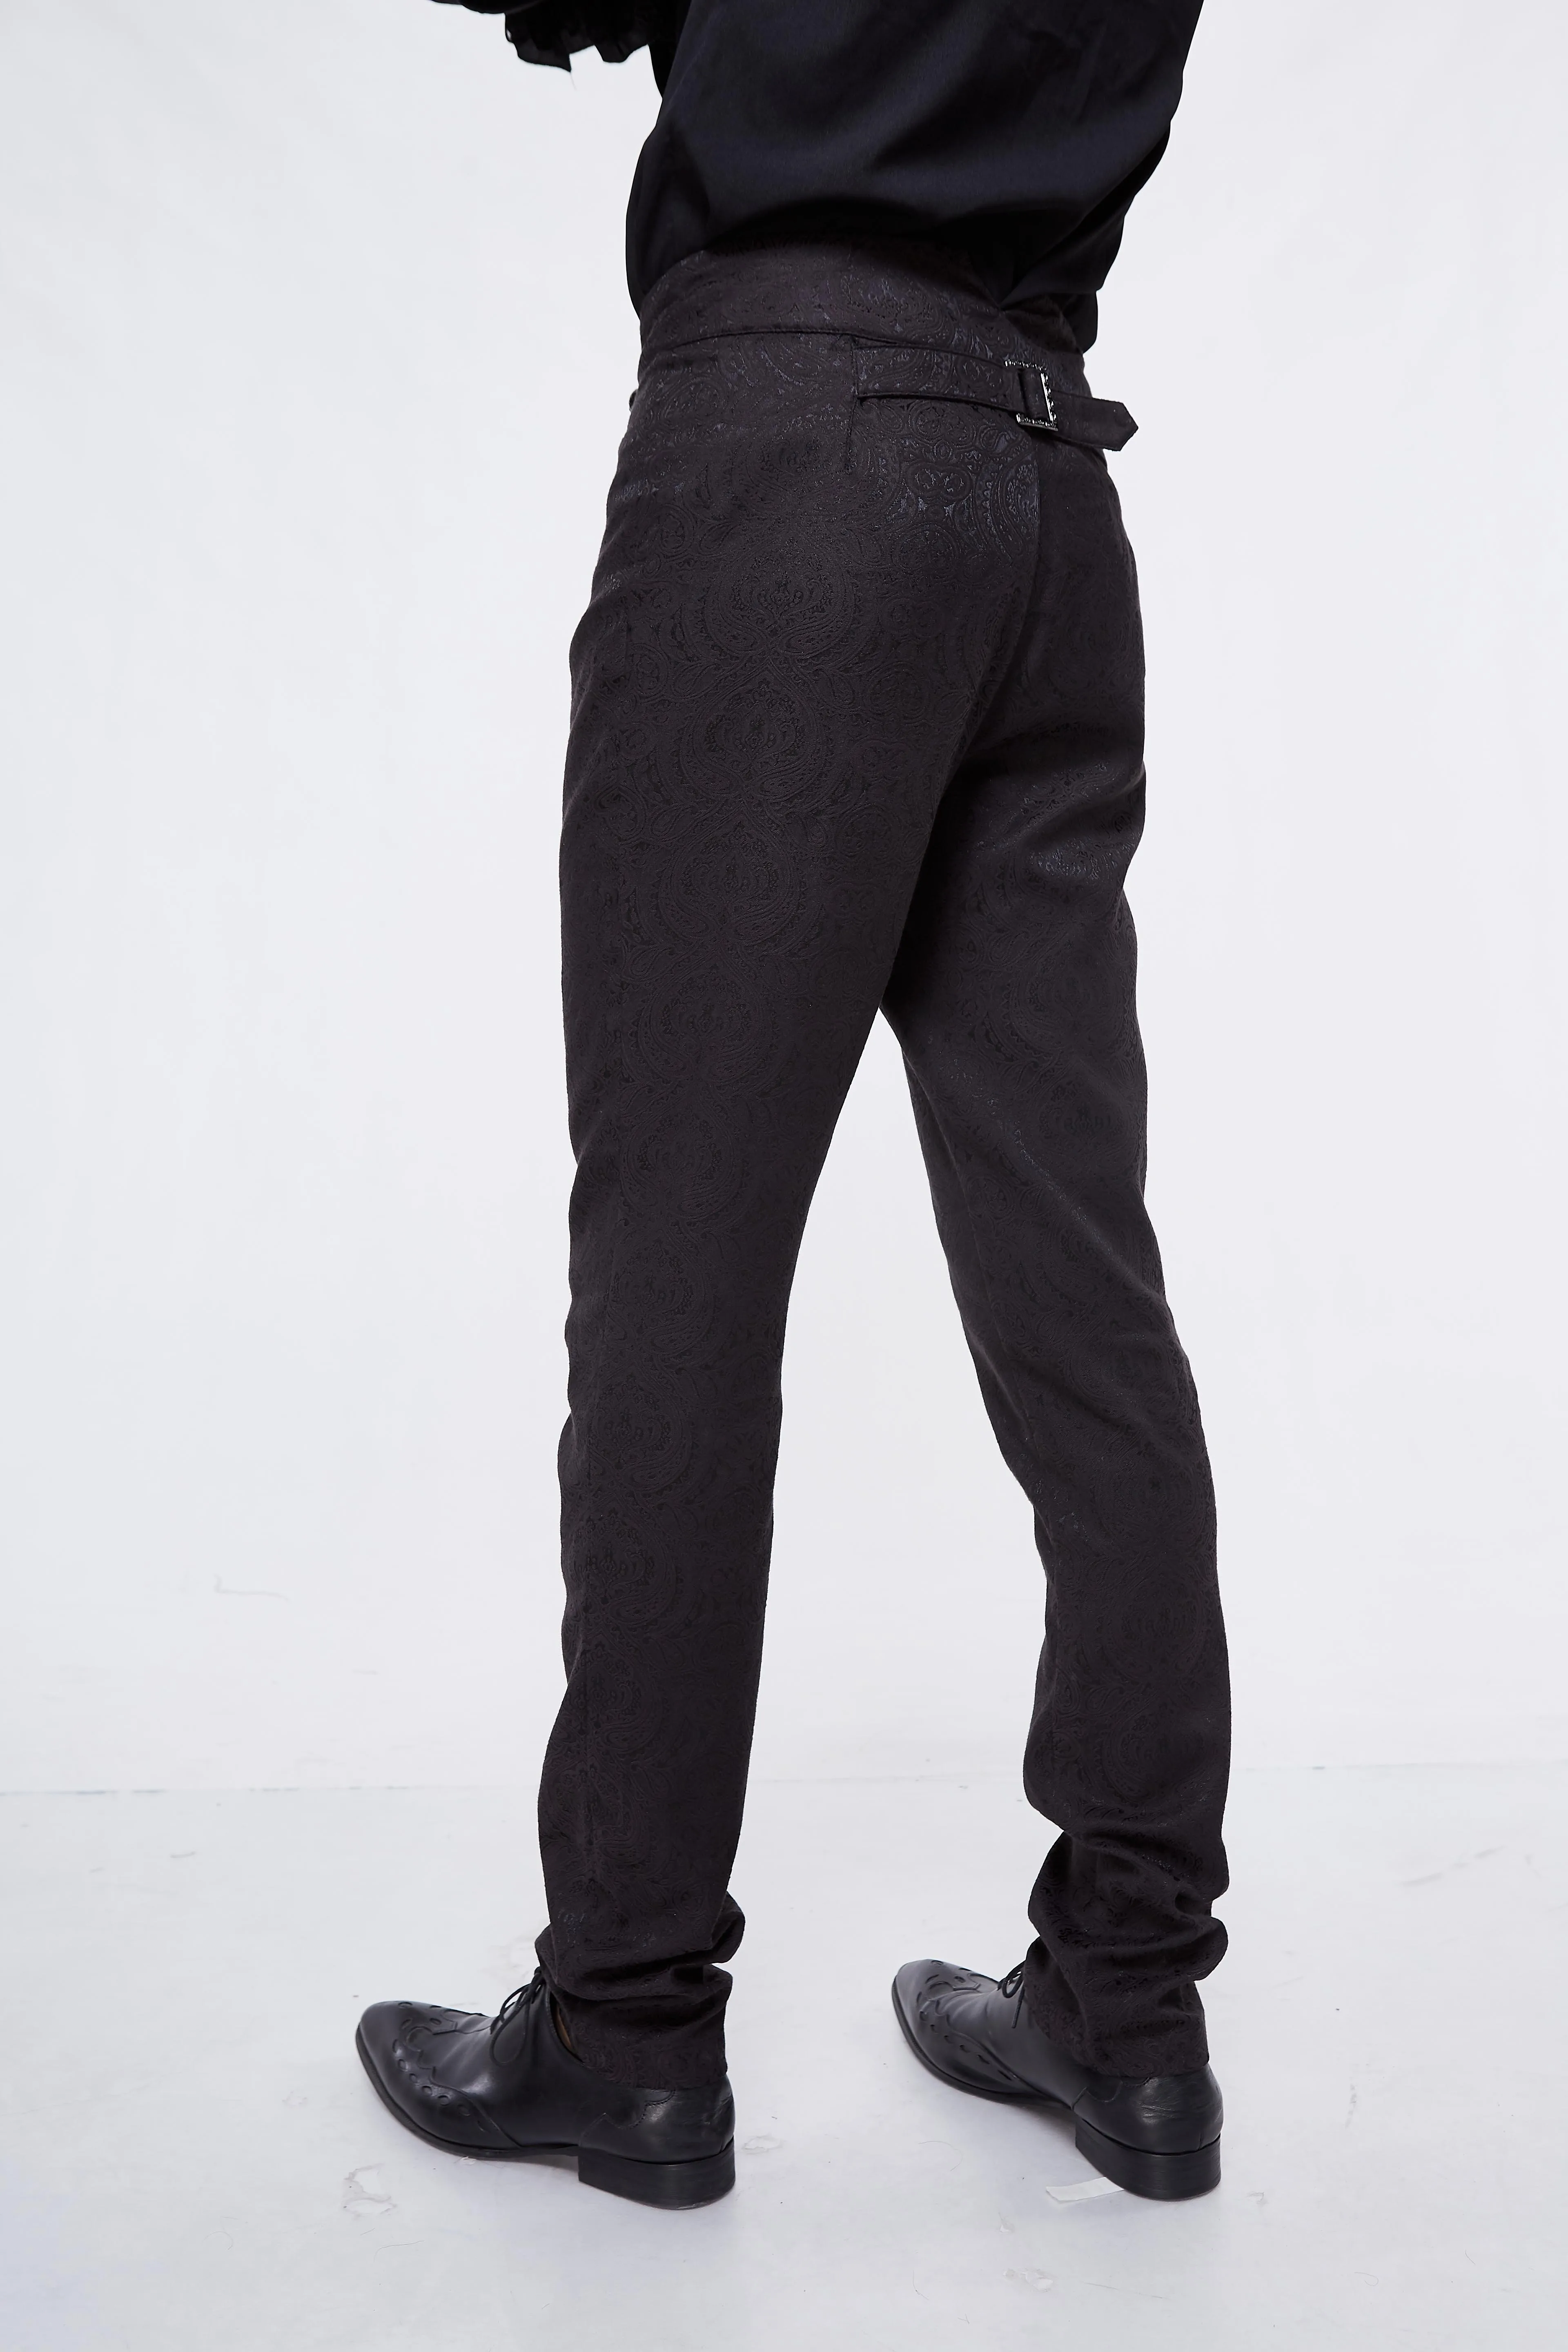 Devil модные джинсы с высокой талией Готический викторианский черный шелк брюки стимпанк брюки для хеллоуина для мужчин